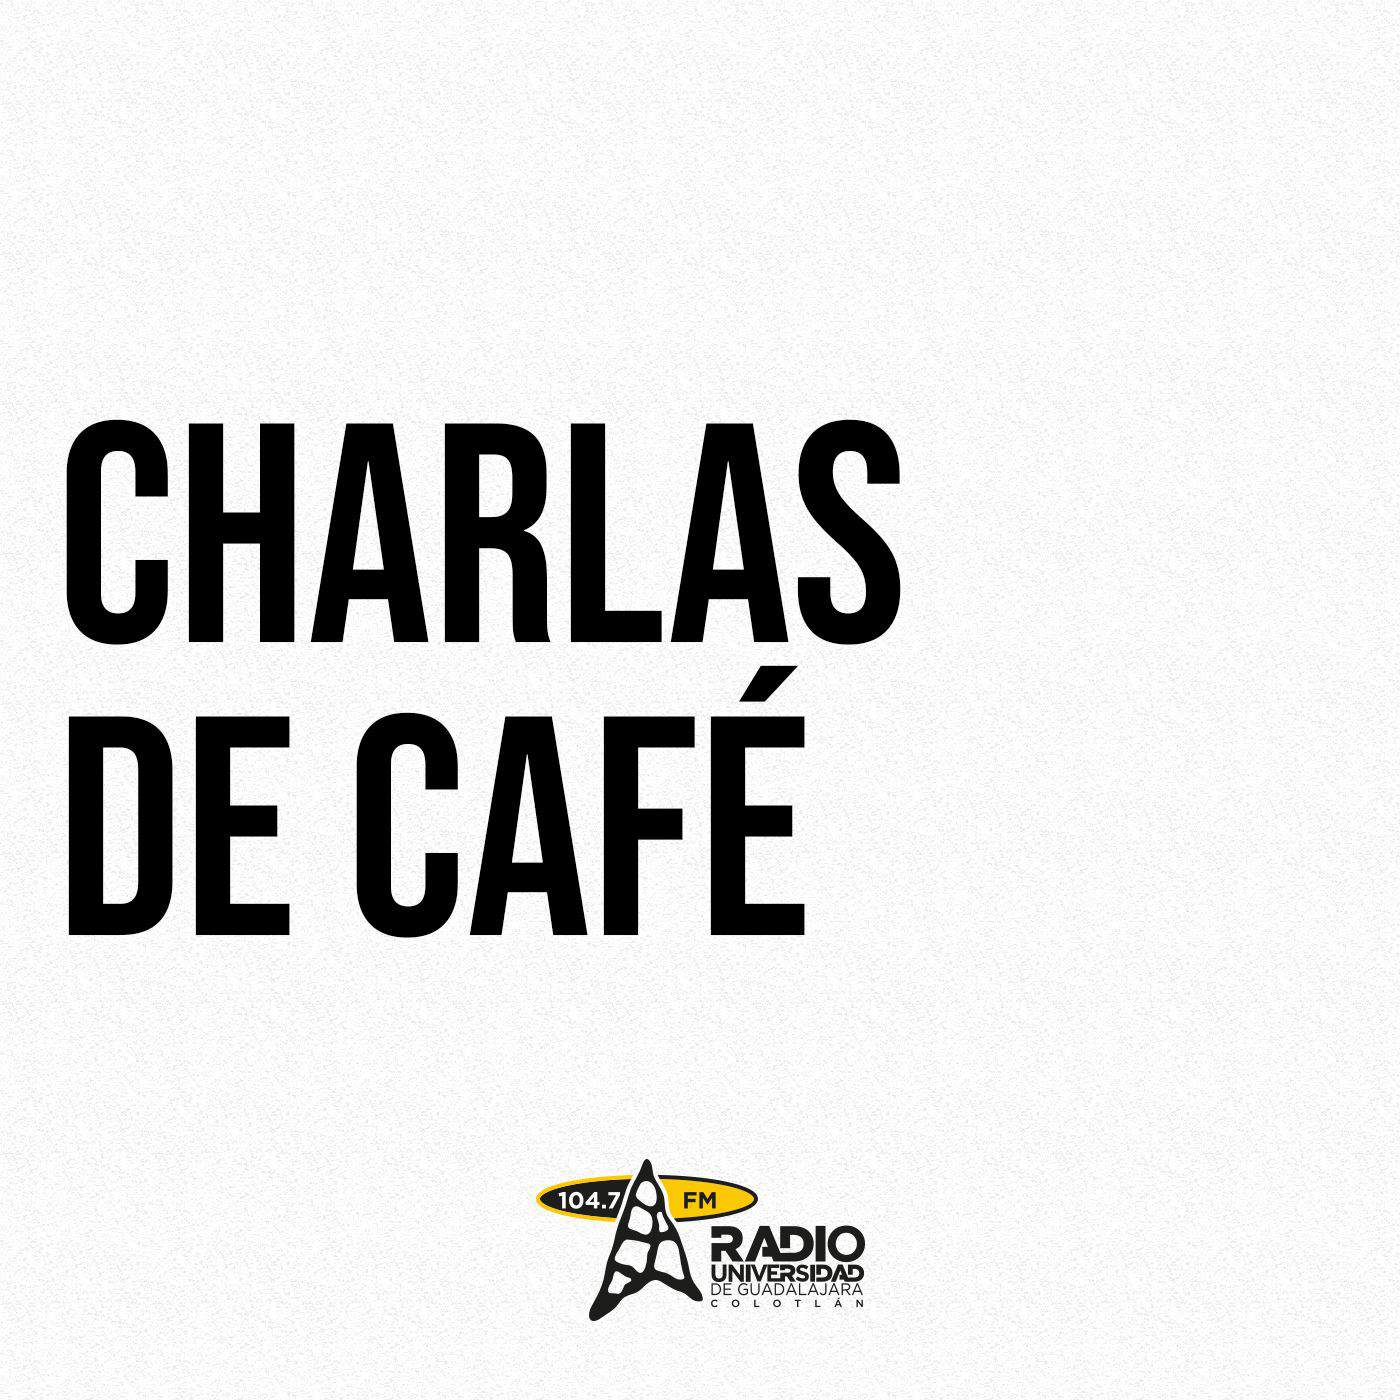 charlasdecafe